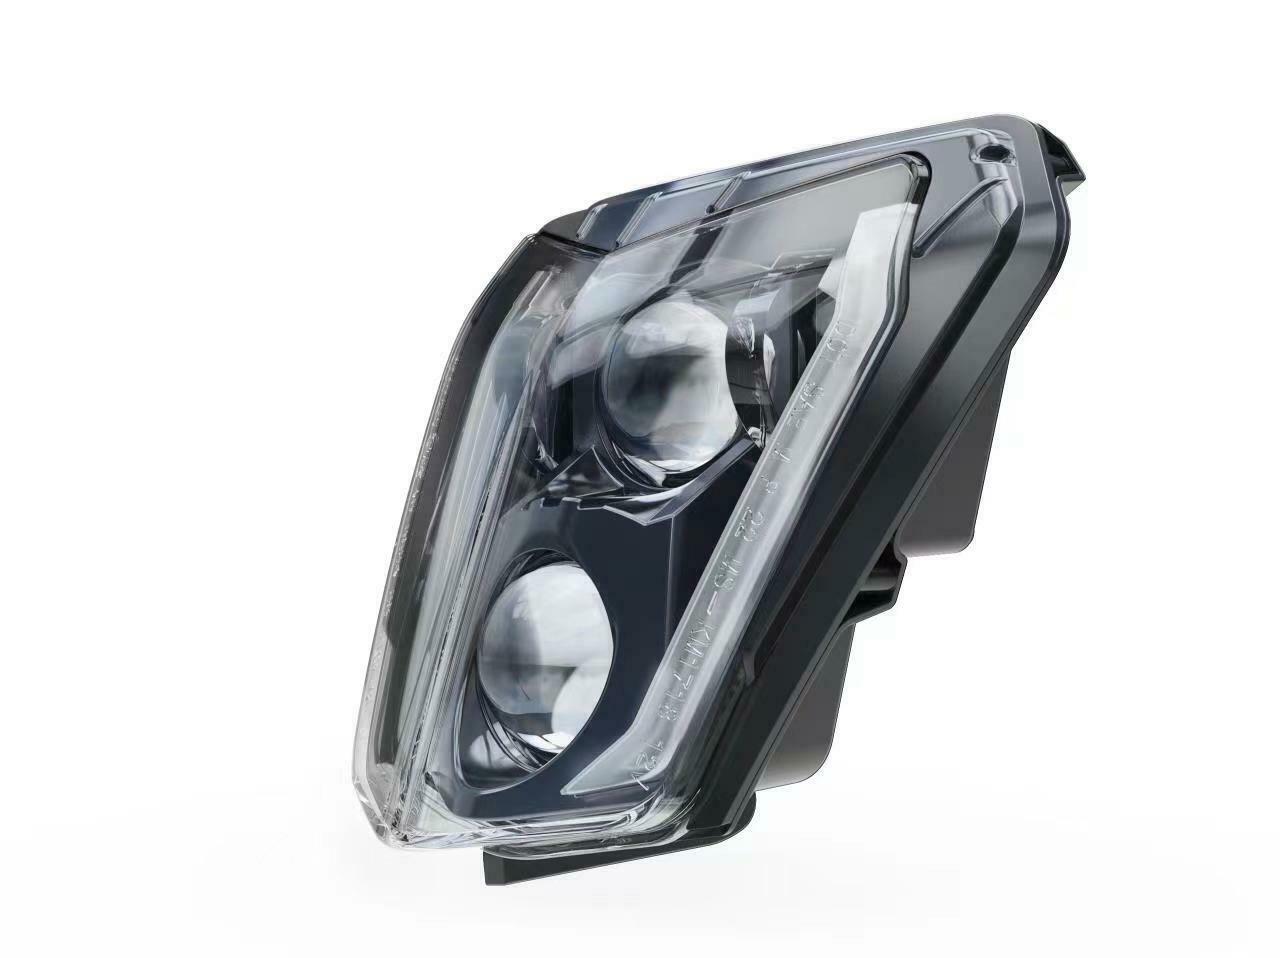 LED Headlight For KTM Duke 690,Duke 690R 2012 2013 2014 2015 2016